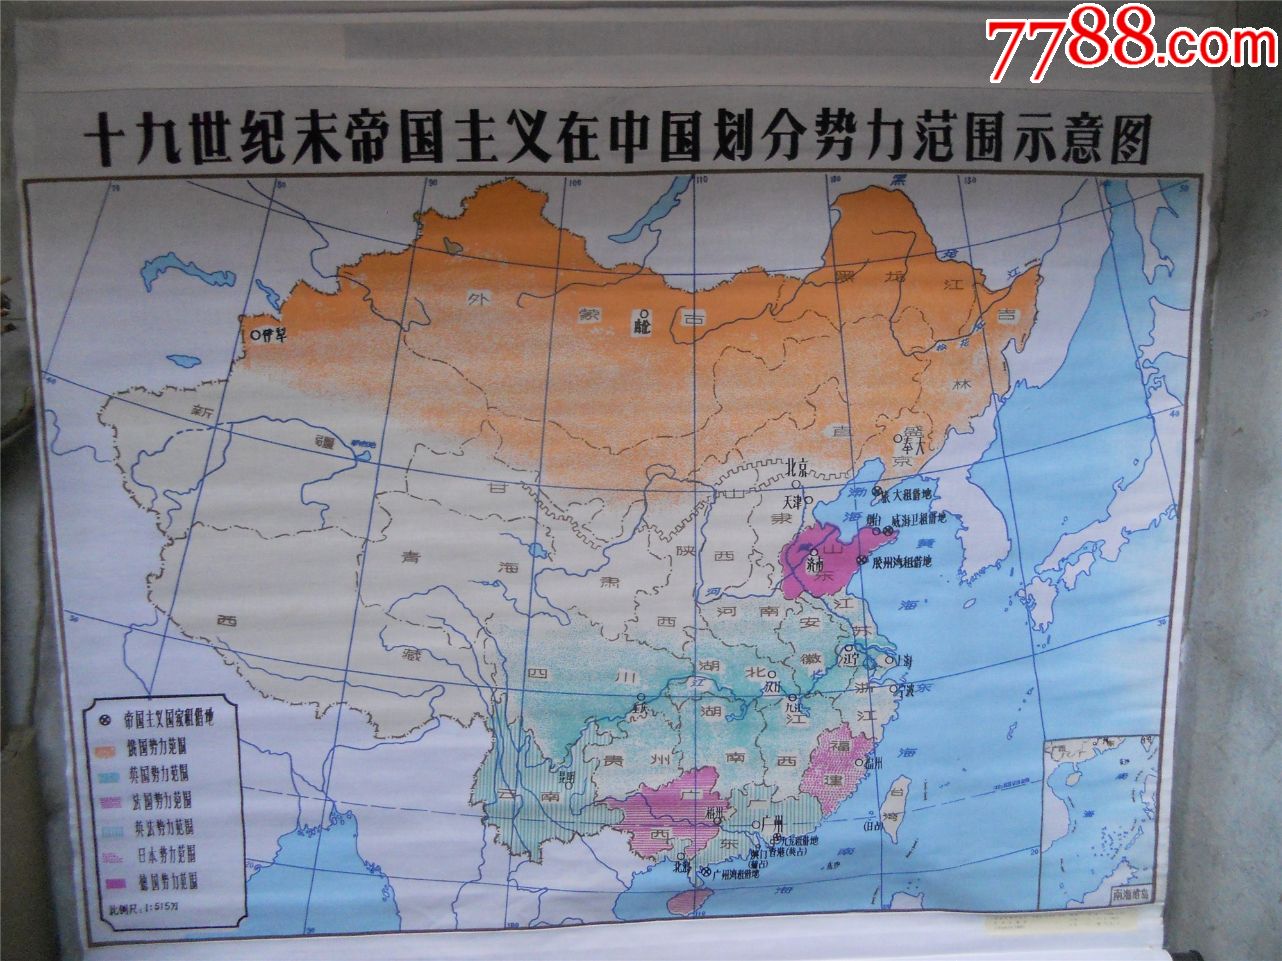 十九世纪末帝国主义在中国划分势力范围示意图(历史教学挂图)布制品